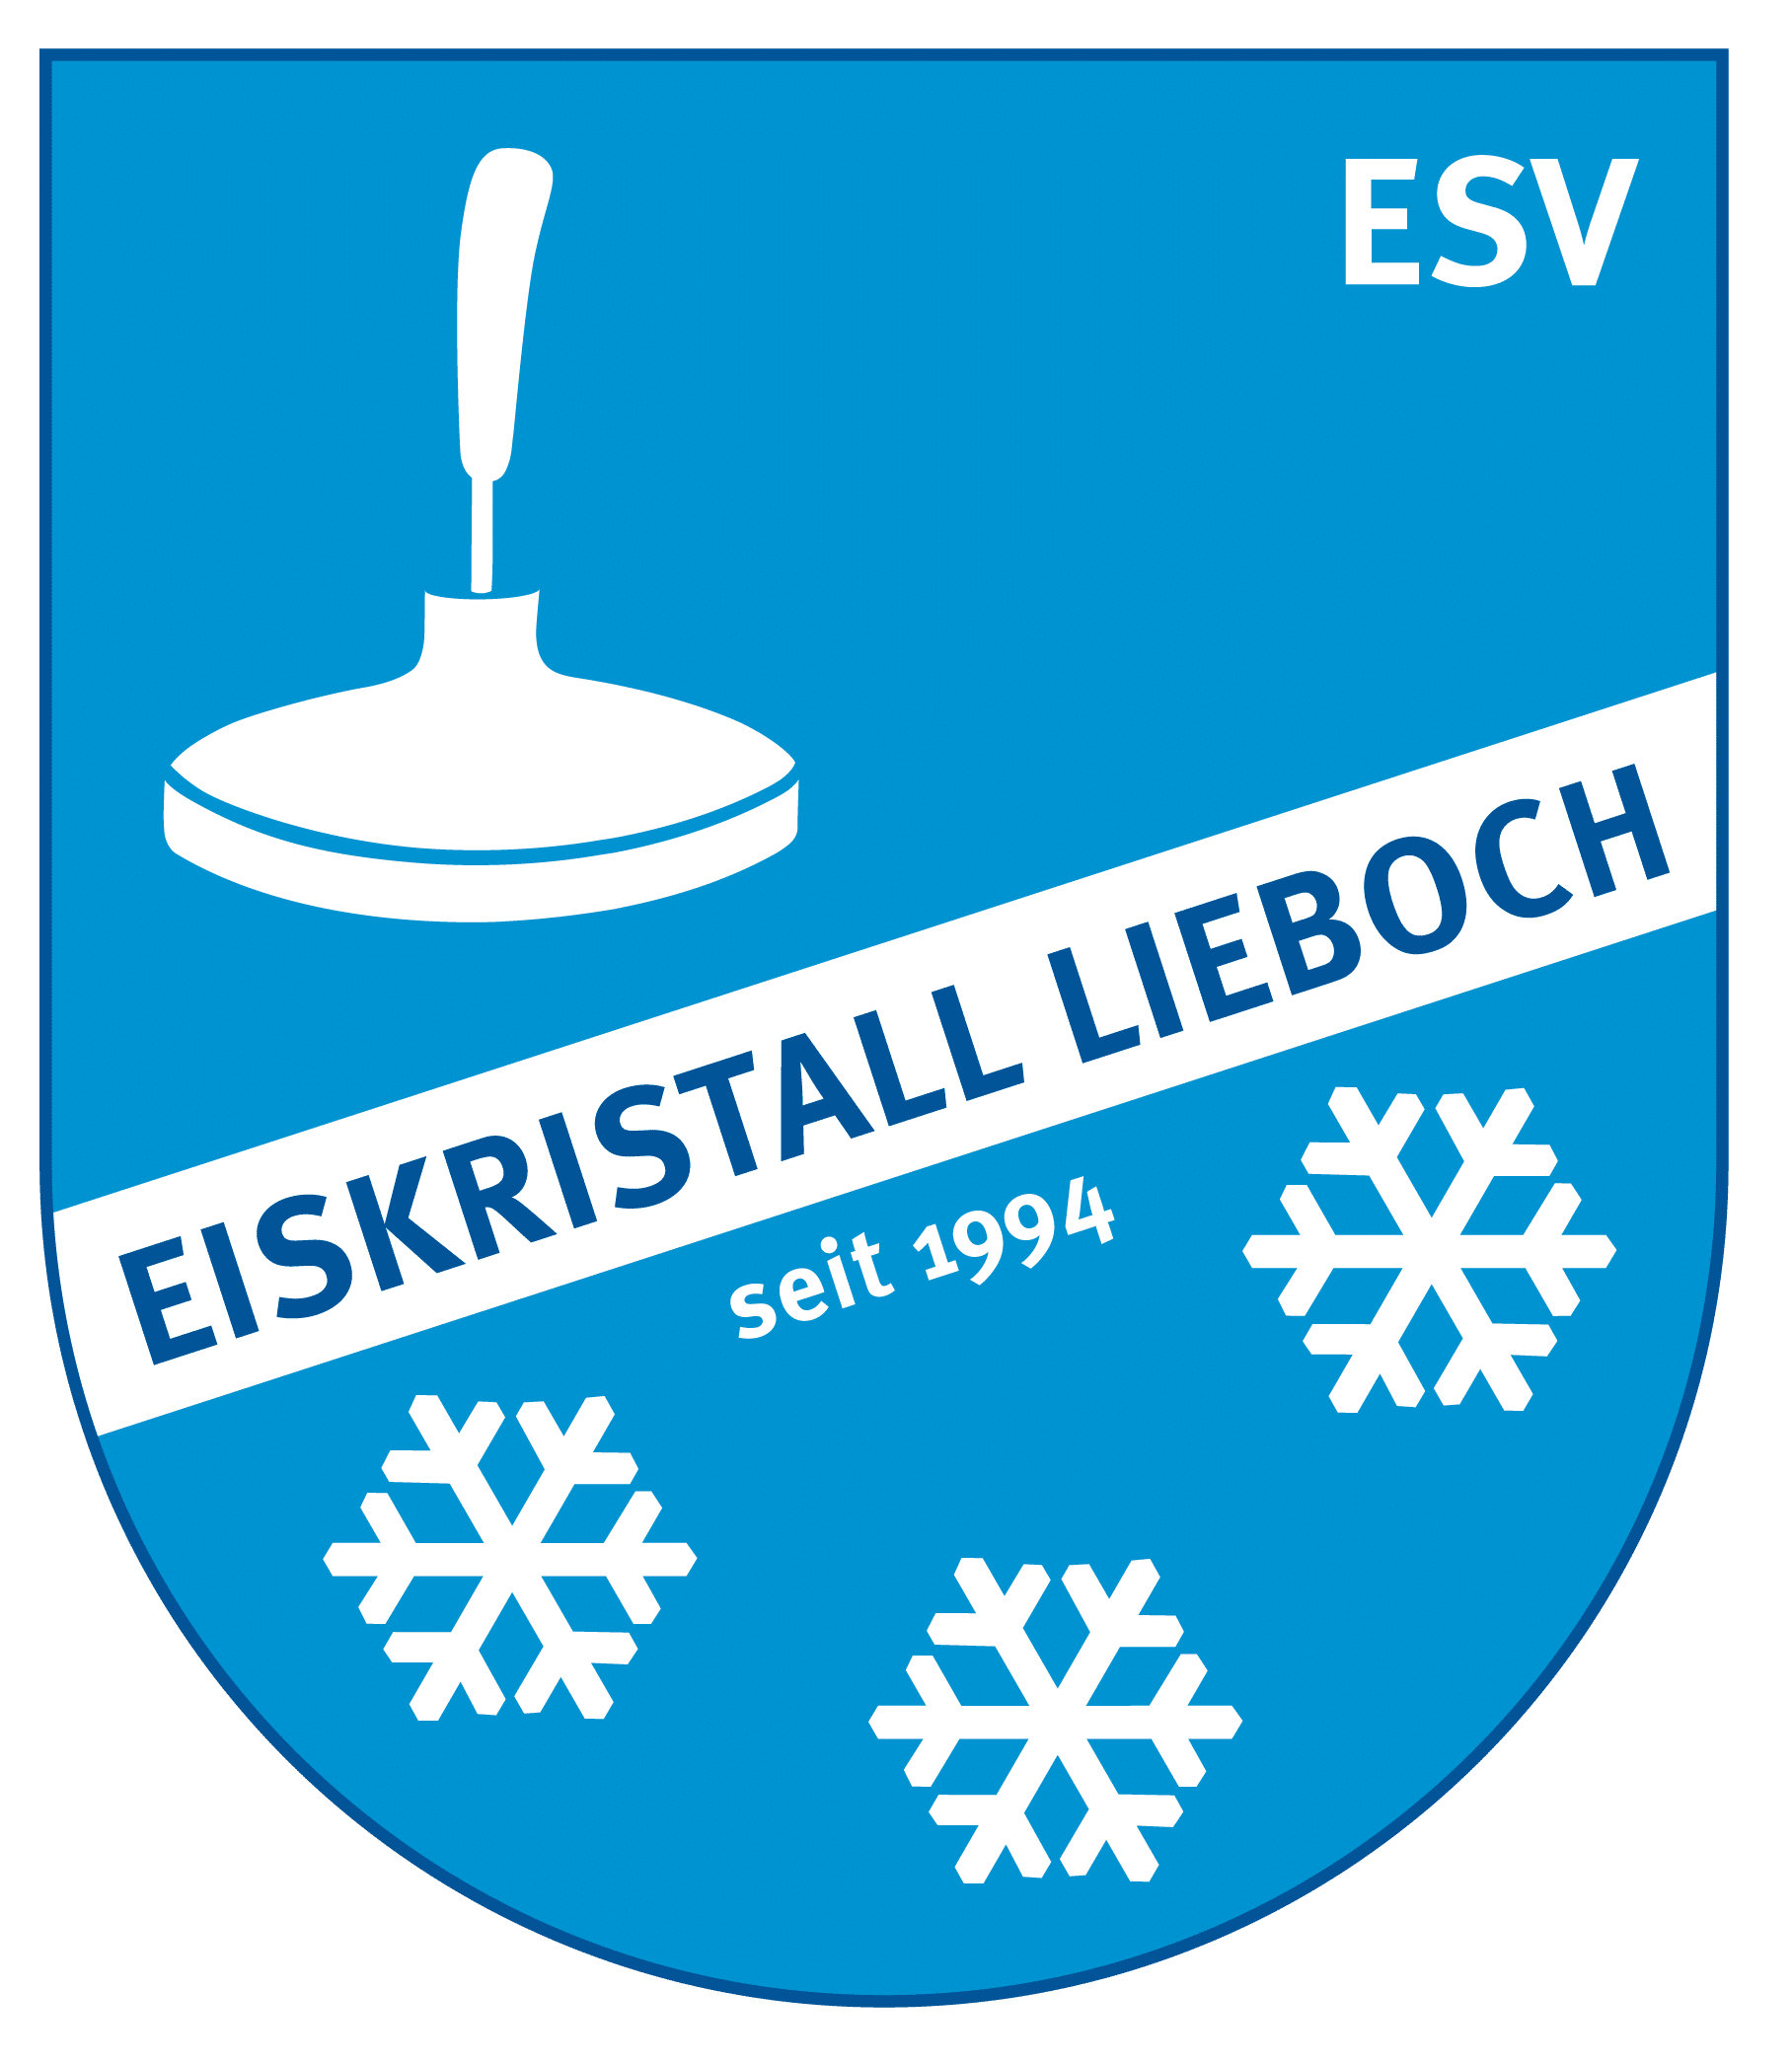 Logo ESV Eiskristall LIEBOCH